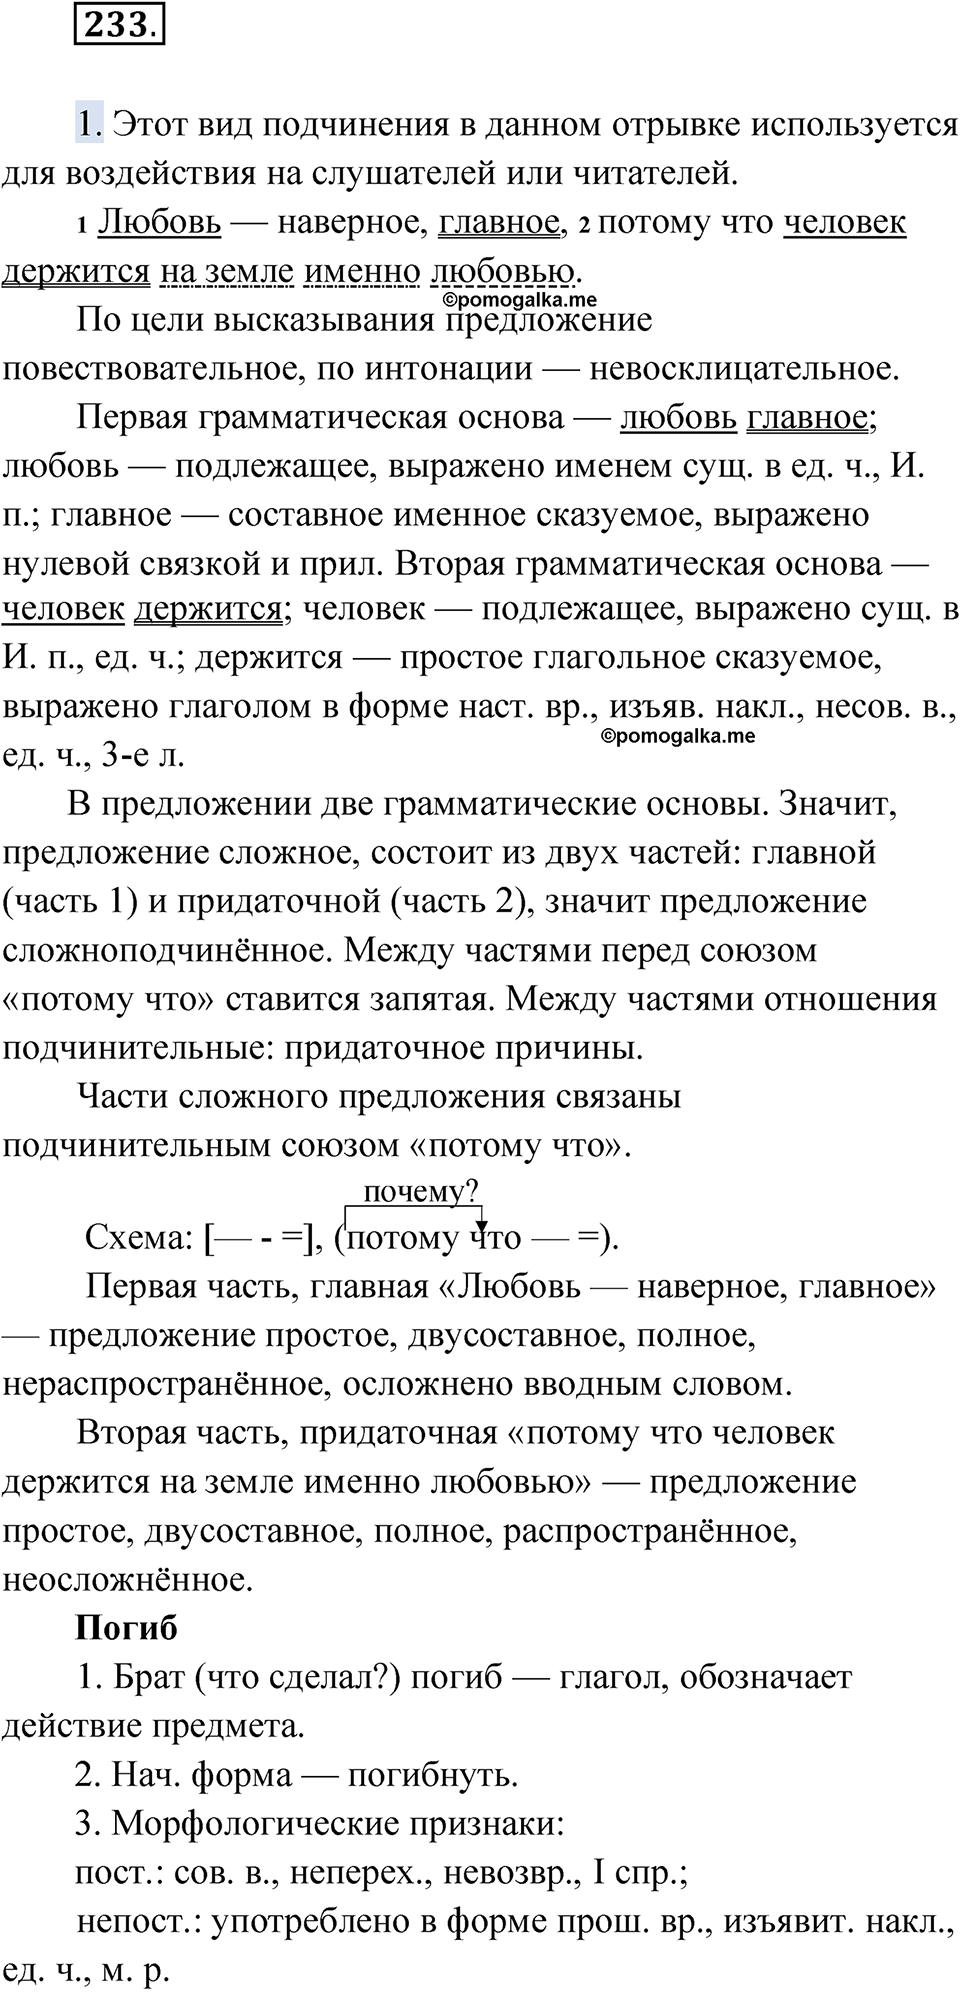 страница 255 упражнение 233 русский язык 9 класс Быстрова 1 часть 2022 год